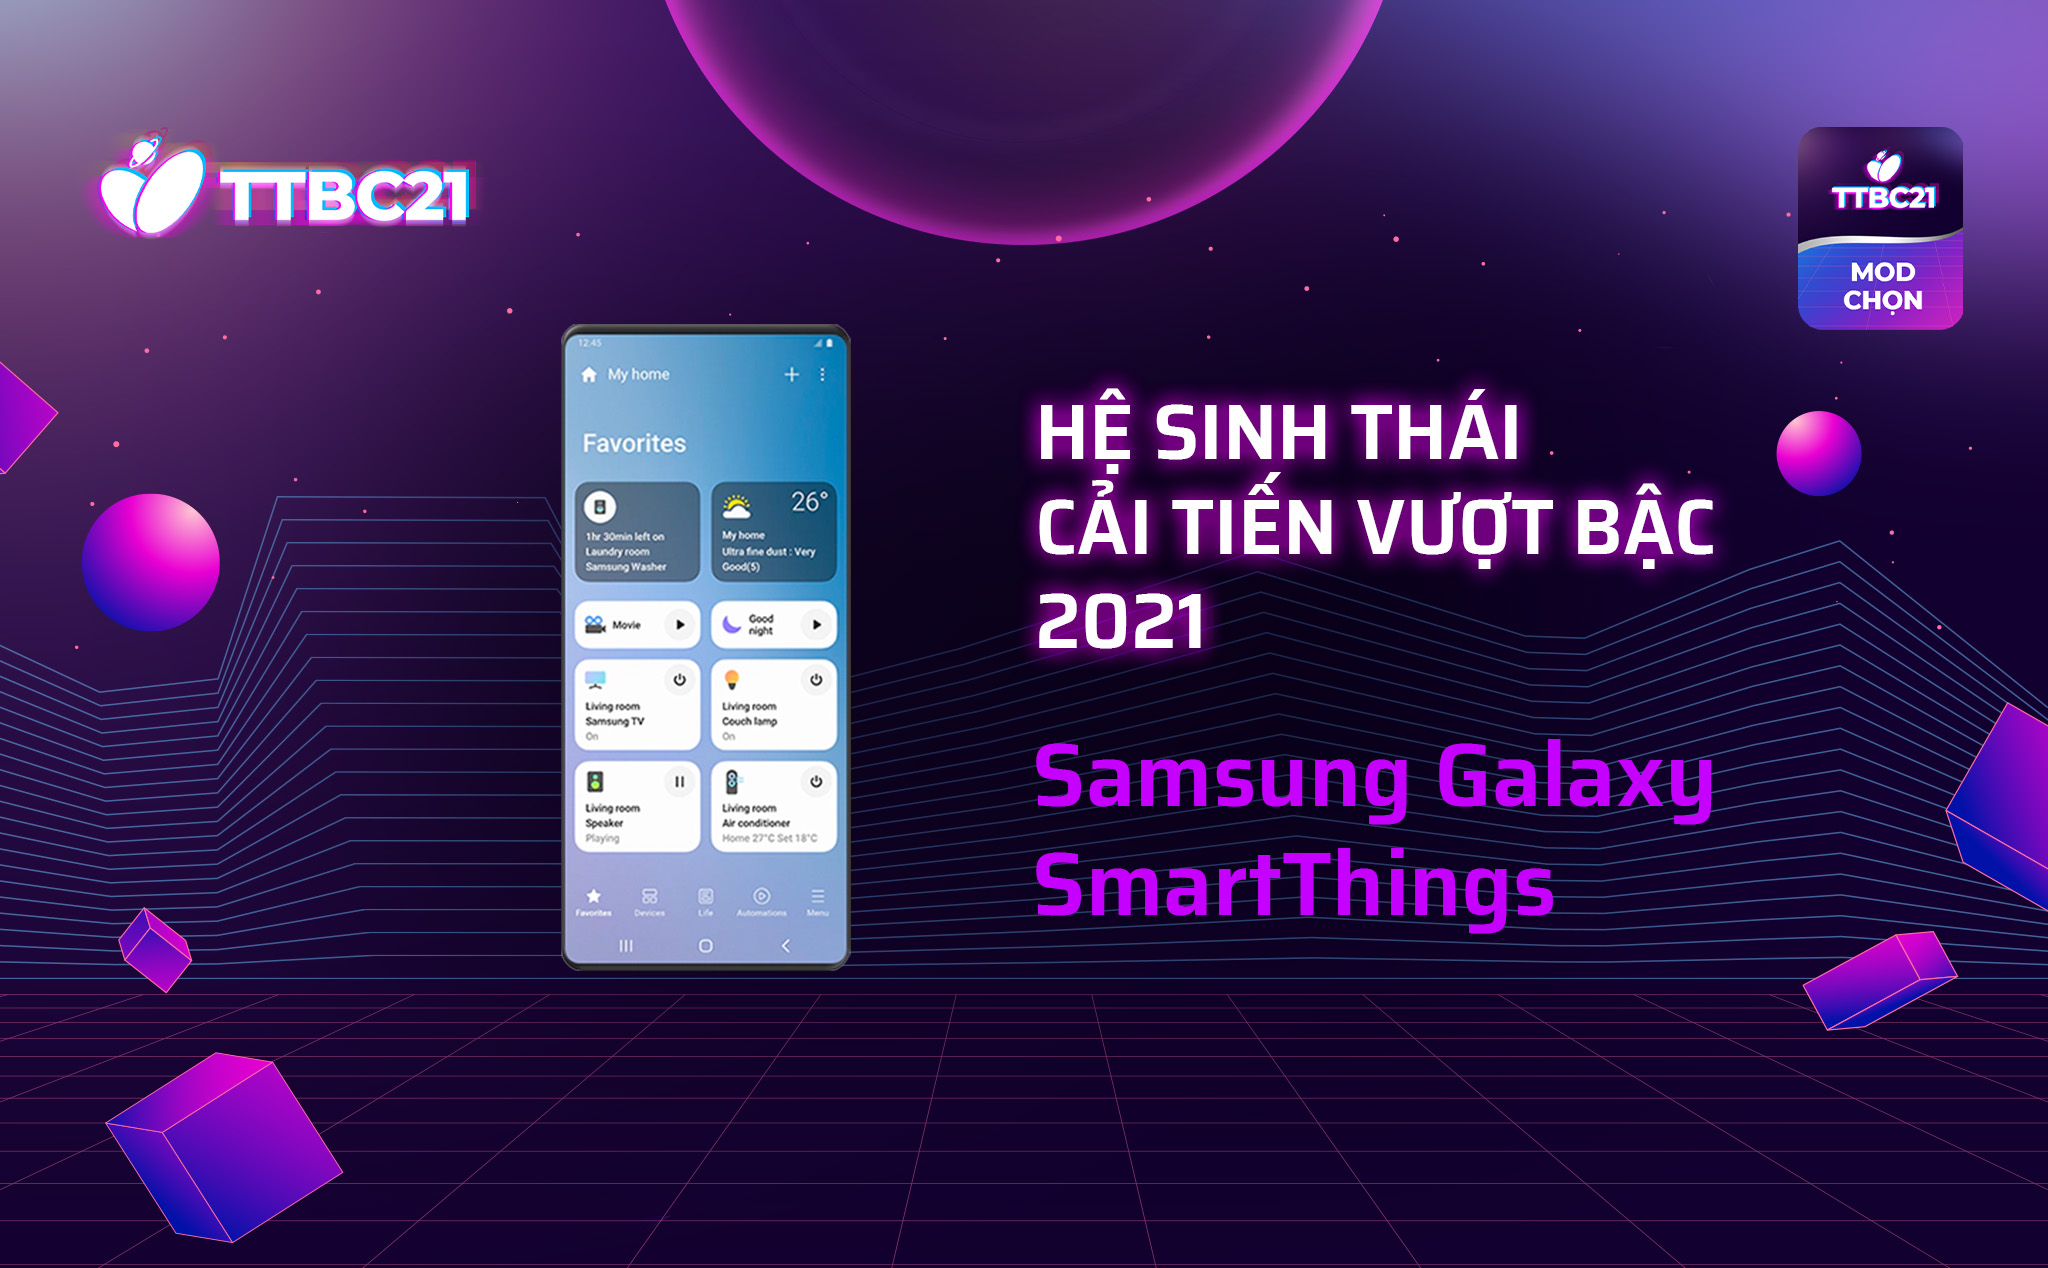 TTBC21 - Mod Choice: Hệ sinh thái cải tiến vượt bậc 2021 - Samsung Galaxy SmartThings